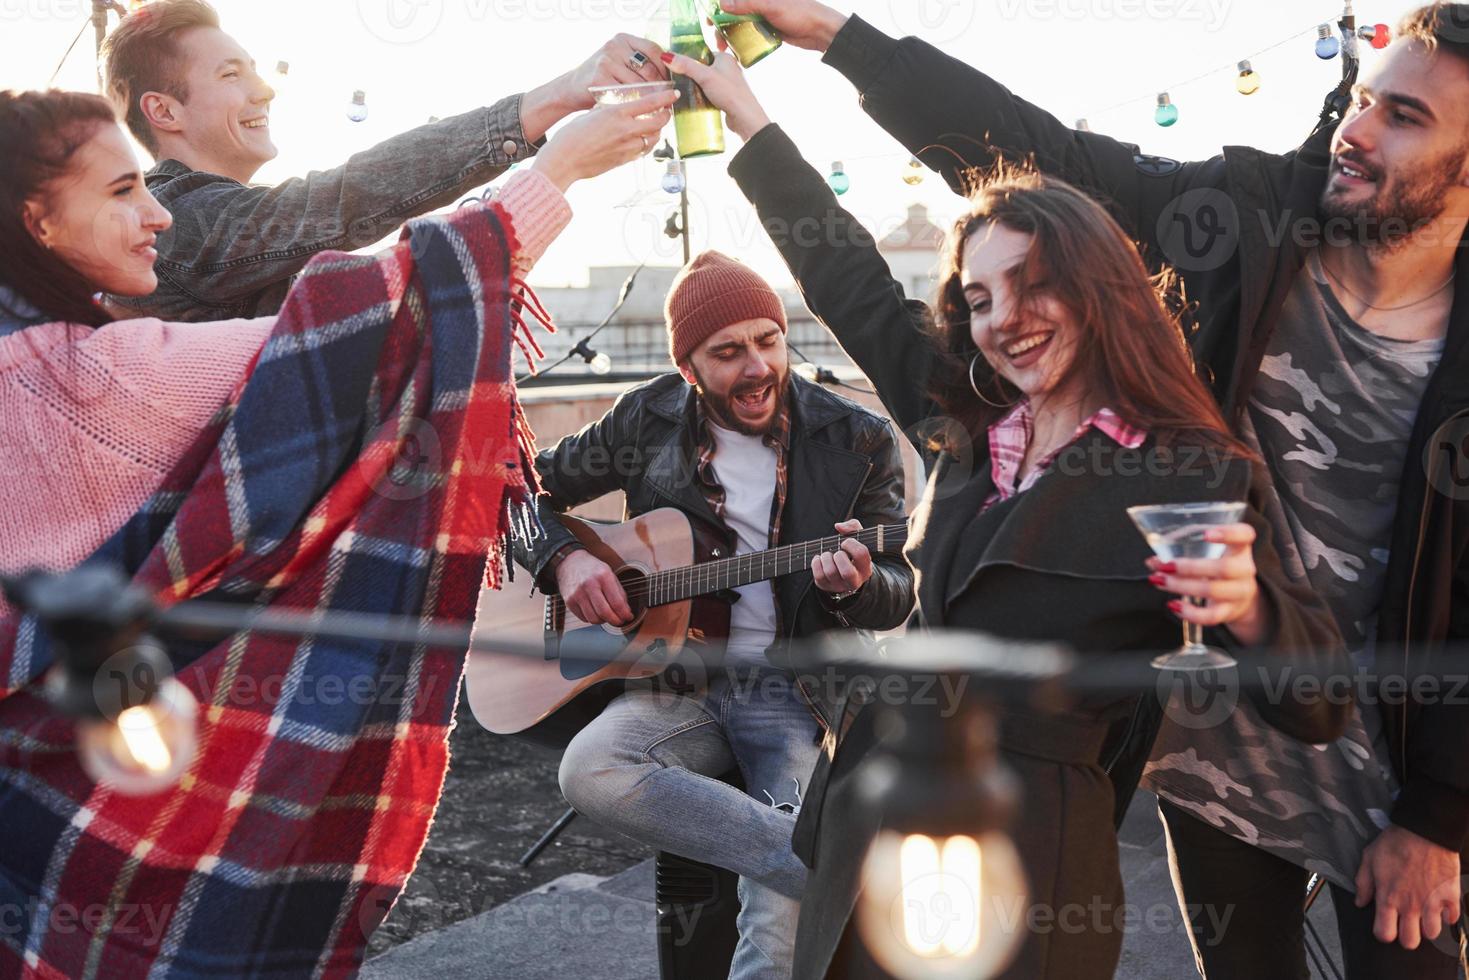 cara bonito canta enquanto os amigos tomam uma bebida. grupo de jovens comemorando em um telhado com um pouco de álcool e tocando violão foto